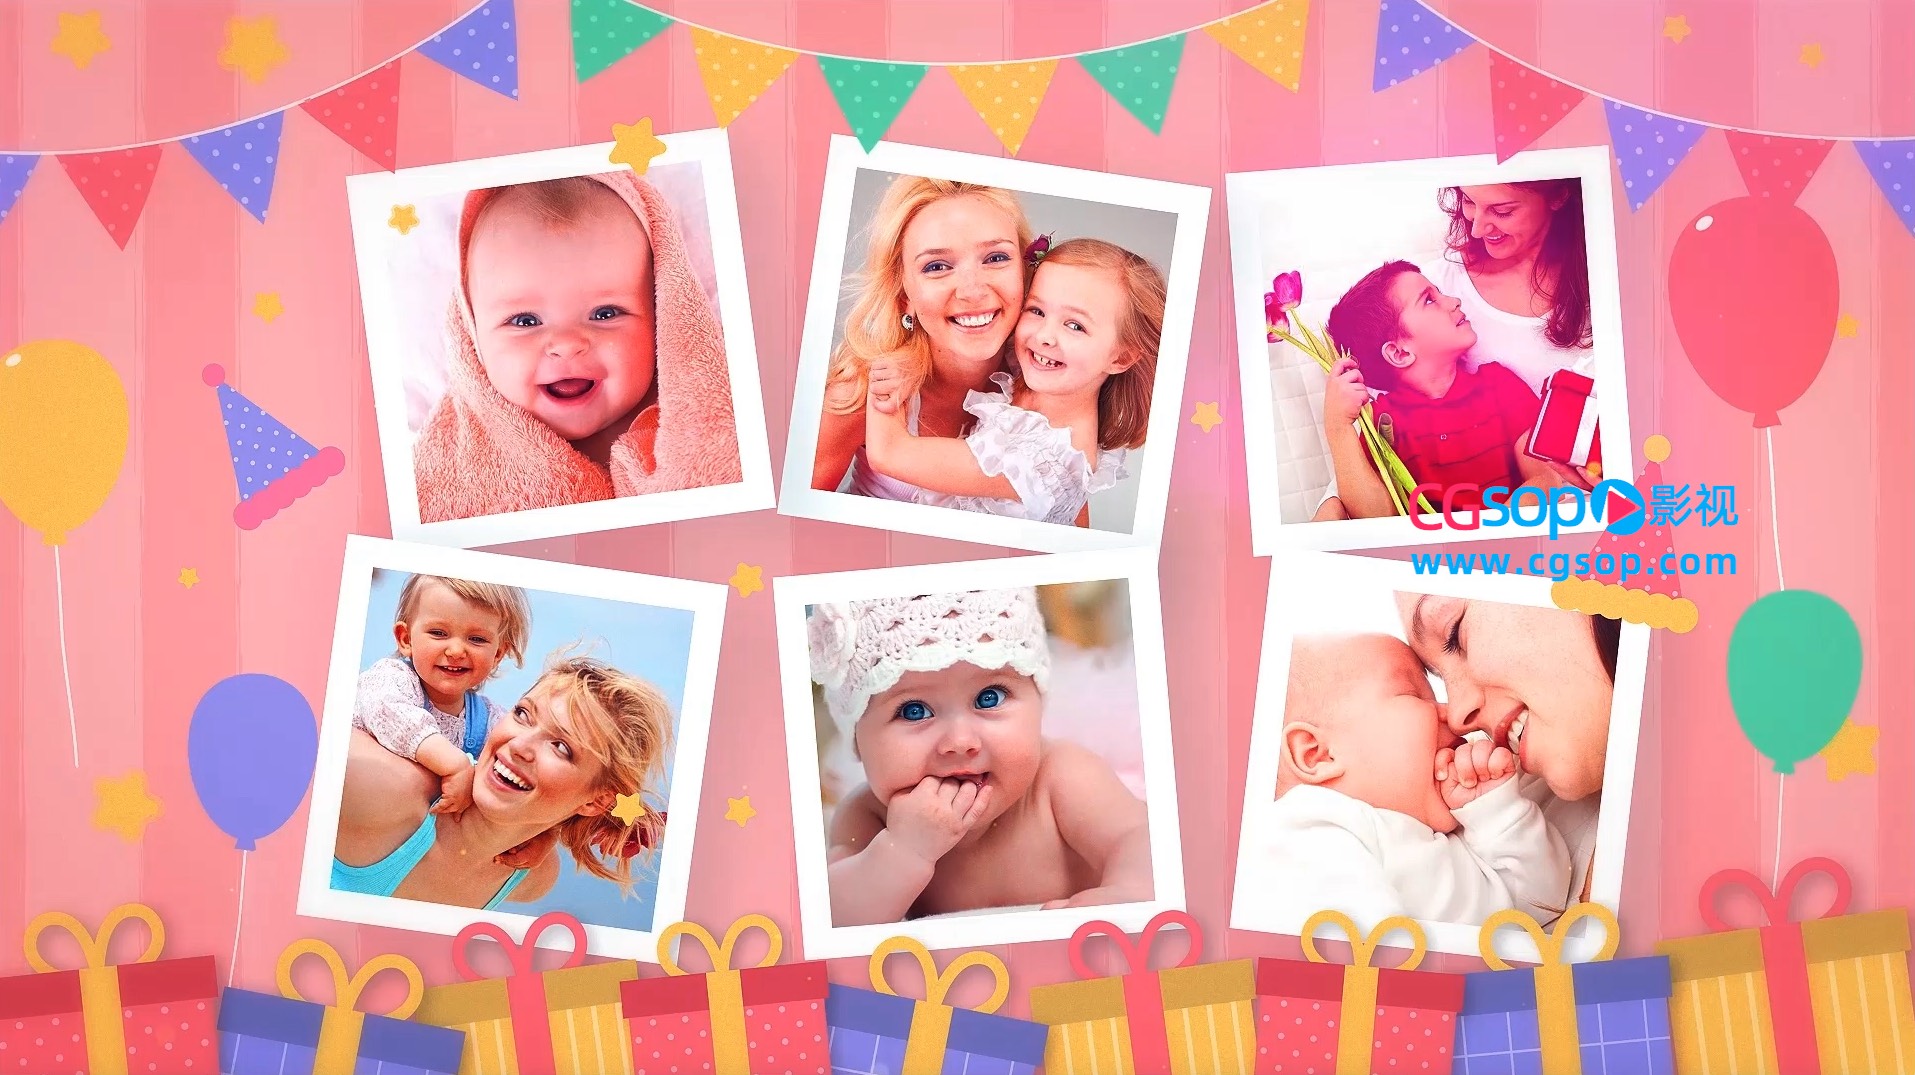 小公主粉色系生日派对照片纪念相册AE模板